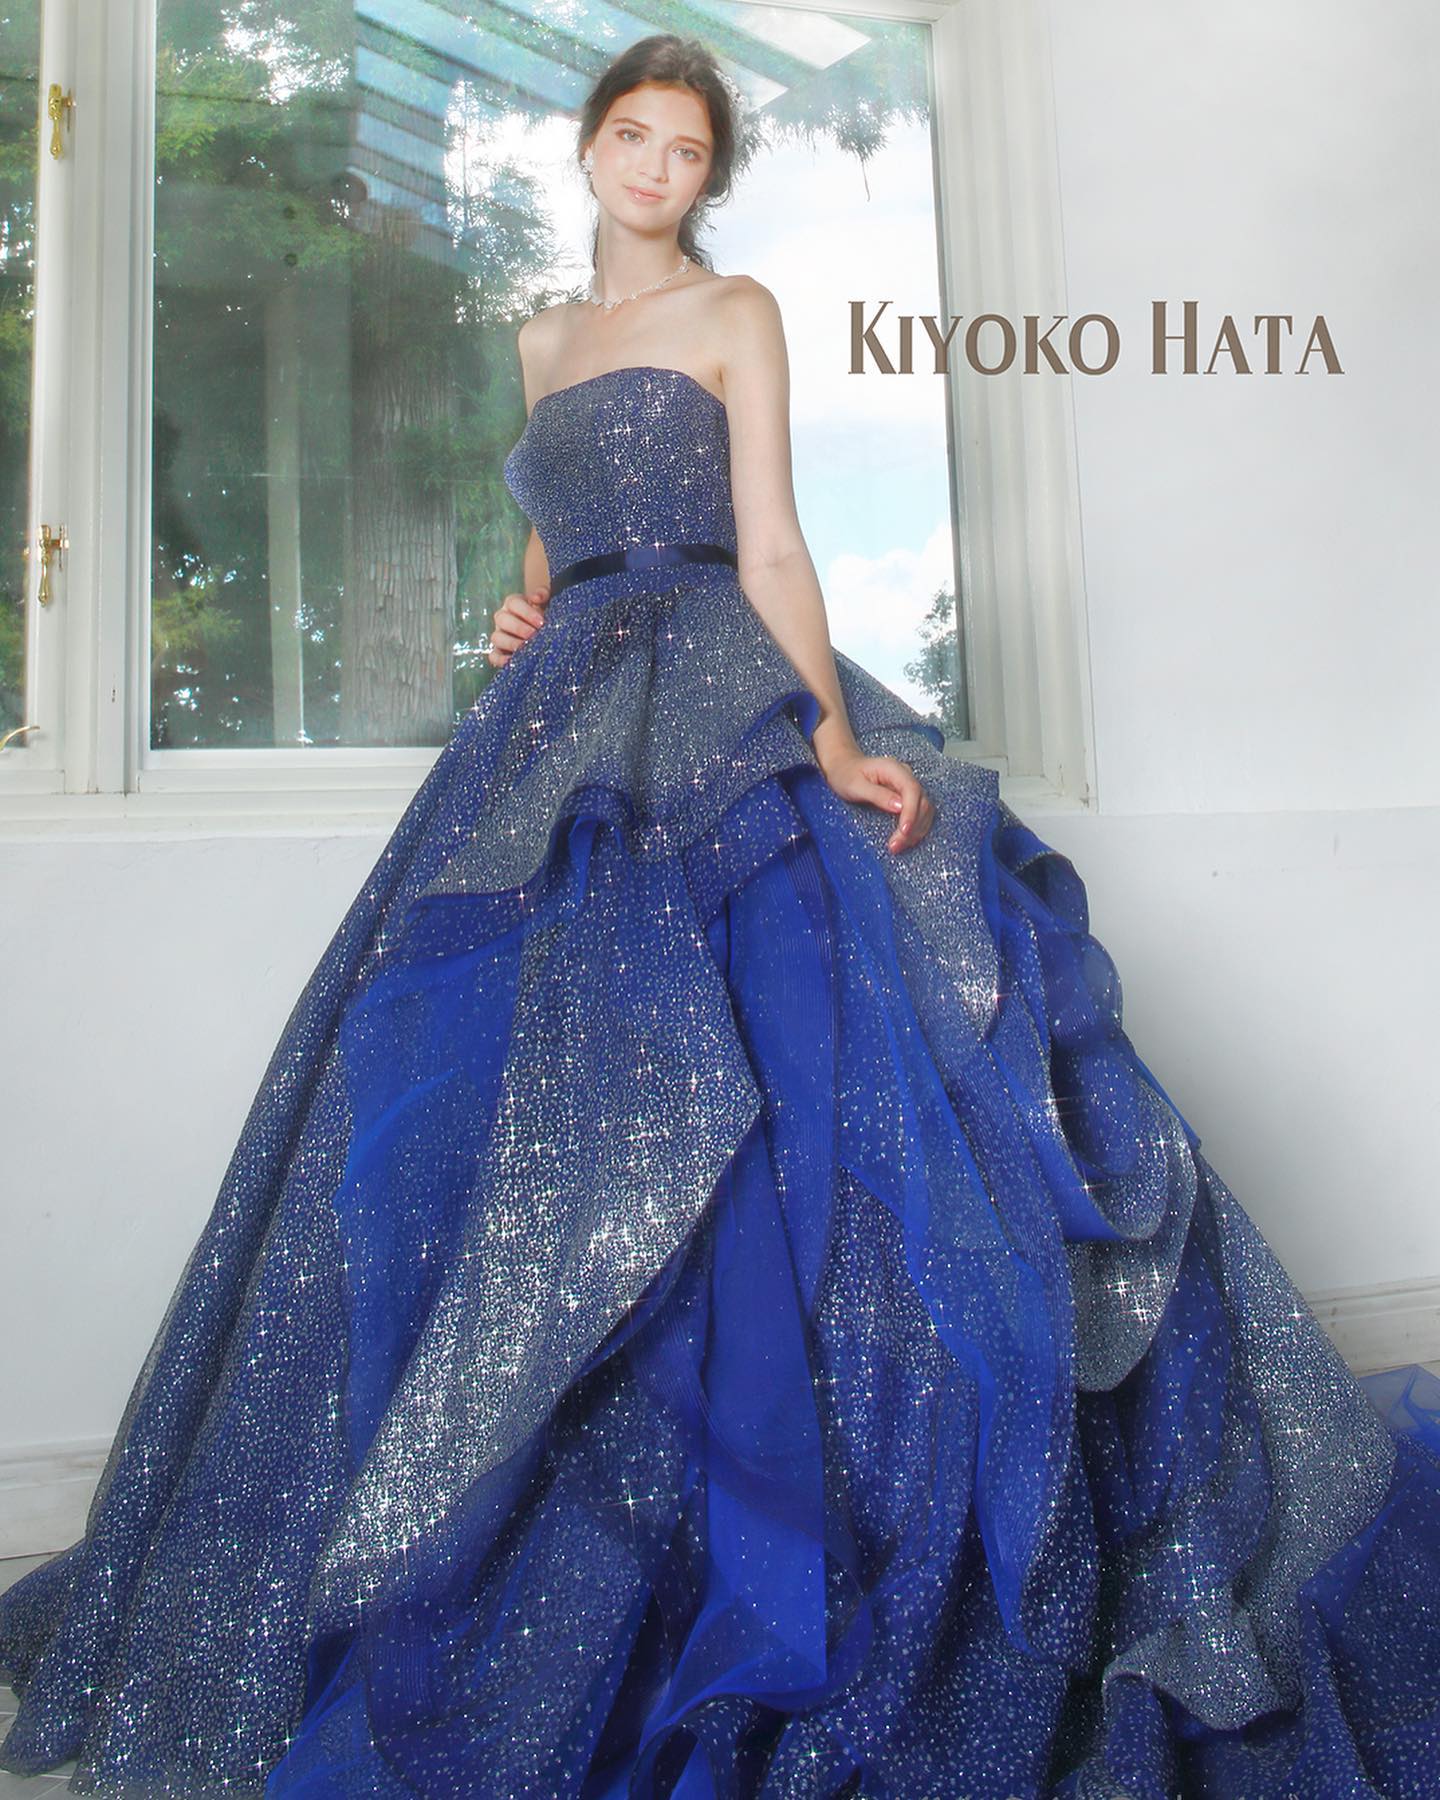 ・今日は大人気のKIYOKO HATA のカラードレスをご紹介・美しく輝く細かいグリッターのグラデーションと、動くたびにランダムに揺れるフリルが魅力的なドレス・上品なネイビーなので、大人っぽい雰囲気も演出できます・お気軽にお問い合わせ下さいませ・KIYOKO HATA（キヨコハタ）　KH-0449CD0353・#wedding #weddingdress #bridalhiro #kiyokohata #ウェディングドレス #プレ花嫁 #ドレス試着　#2021夏婚 #2021冬婚 #ヘアメイク #結婚式  #ドレス選び #前撮り #後撮り #フォトウェディング　#ウェディングヘア  #フォト婚 #前撮り写真　#ブライダルフォト #カップルフォト #ウェディングドレス探し #ウェディングドレス試着　#レンタルドレス #ドレスショップ #ブライダルヒロ #ゼクシィ #プリンセスライン #ドレス迷子 #キヨコハタ #キヨコハタドレス